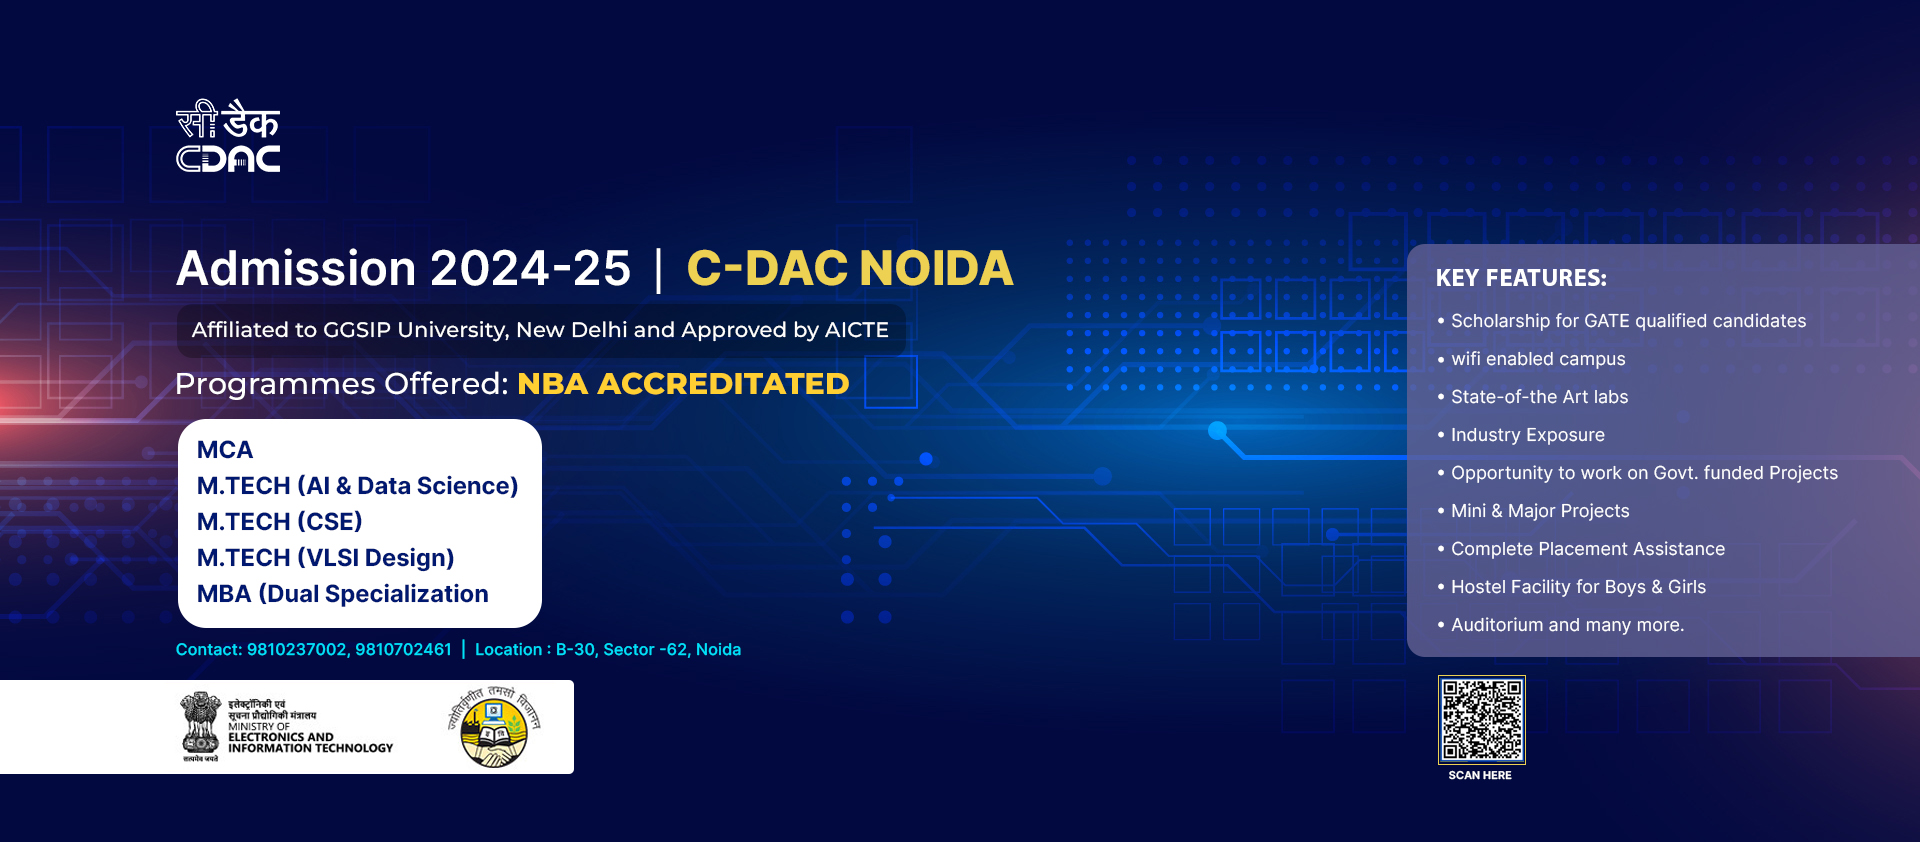 Admission 2024-25, C-DAC Noida